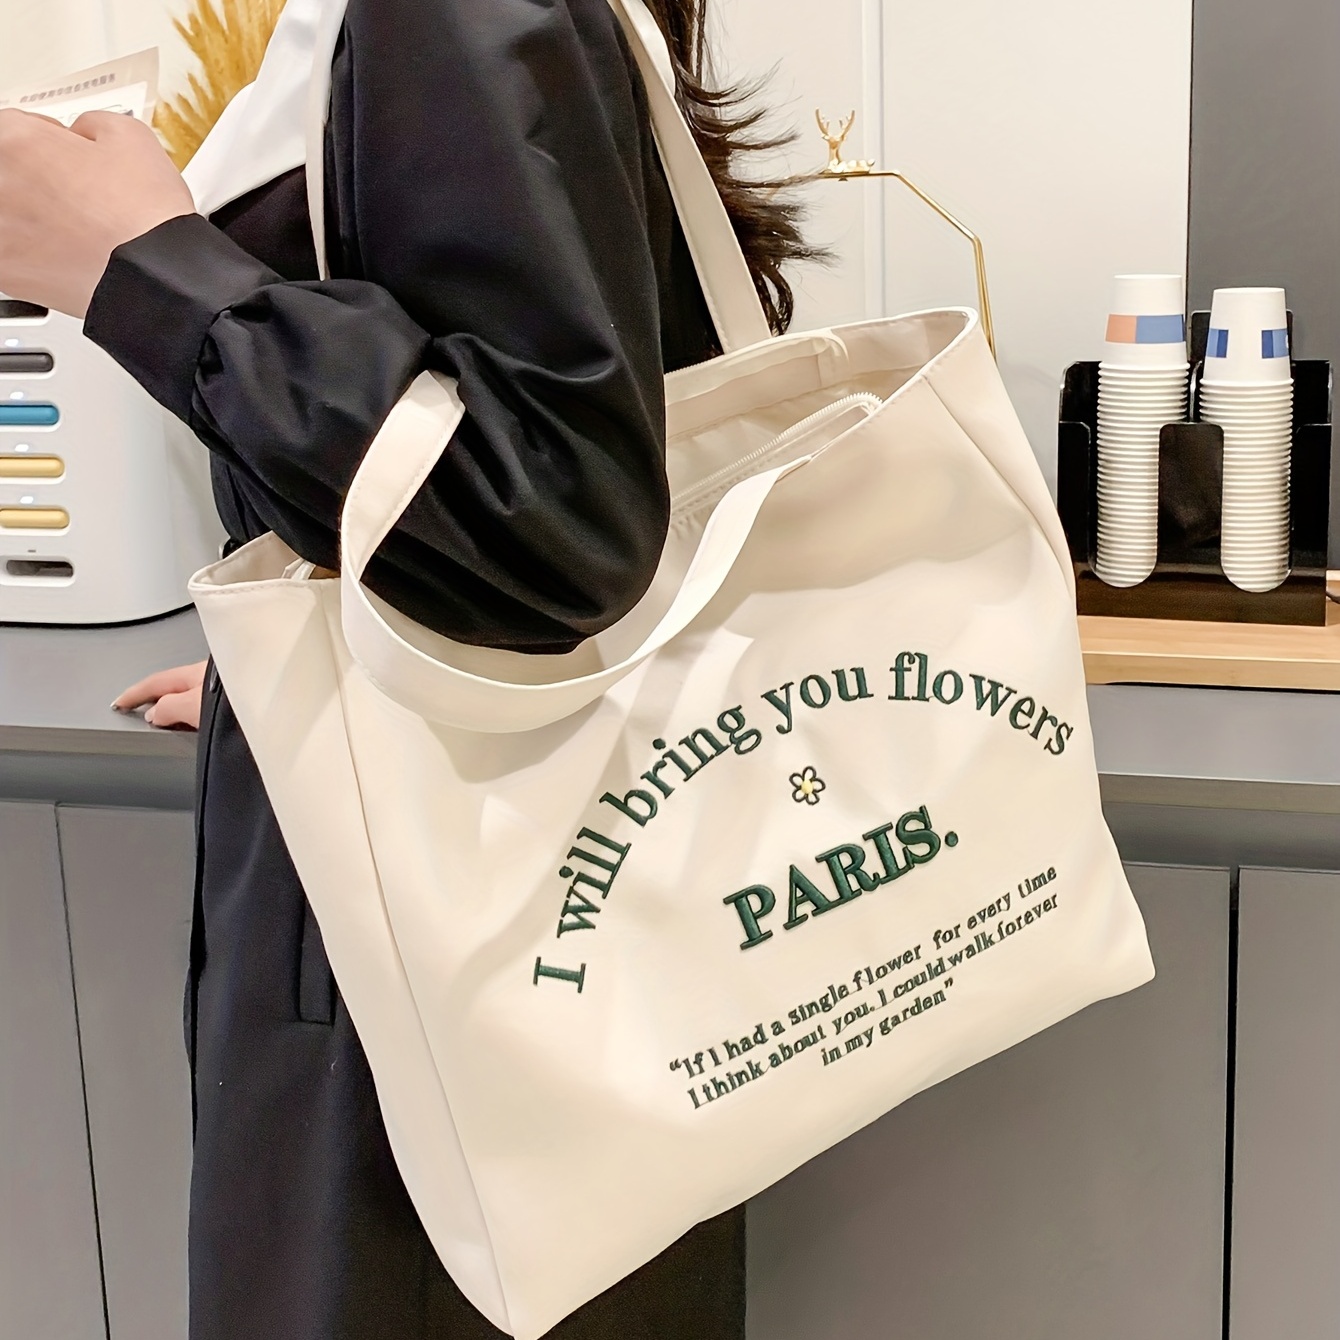  Women Canvas Tote Handbags Casual Shoulder Work Bag